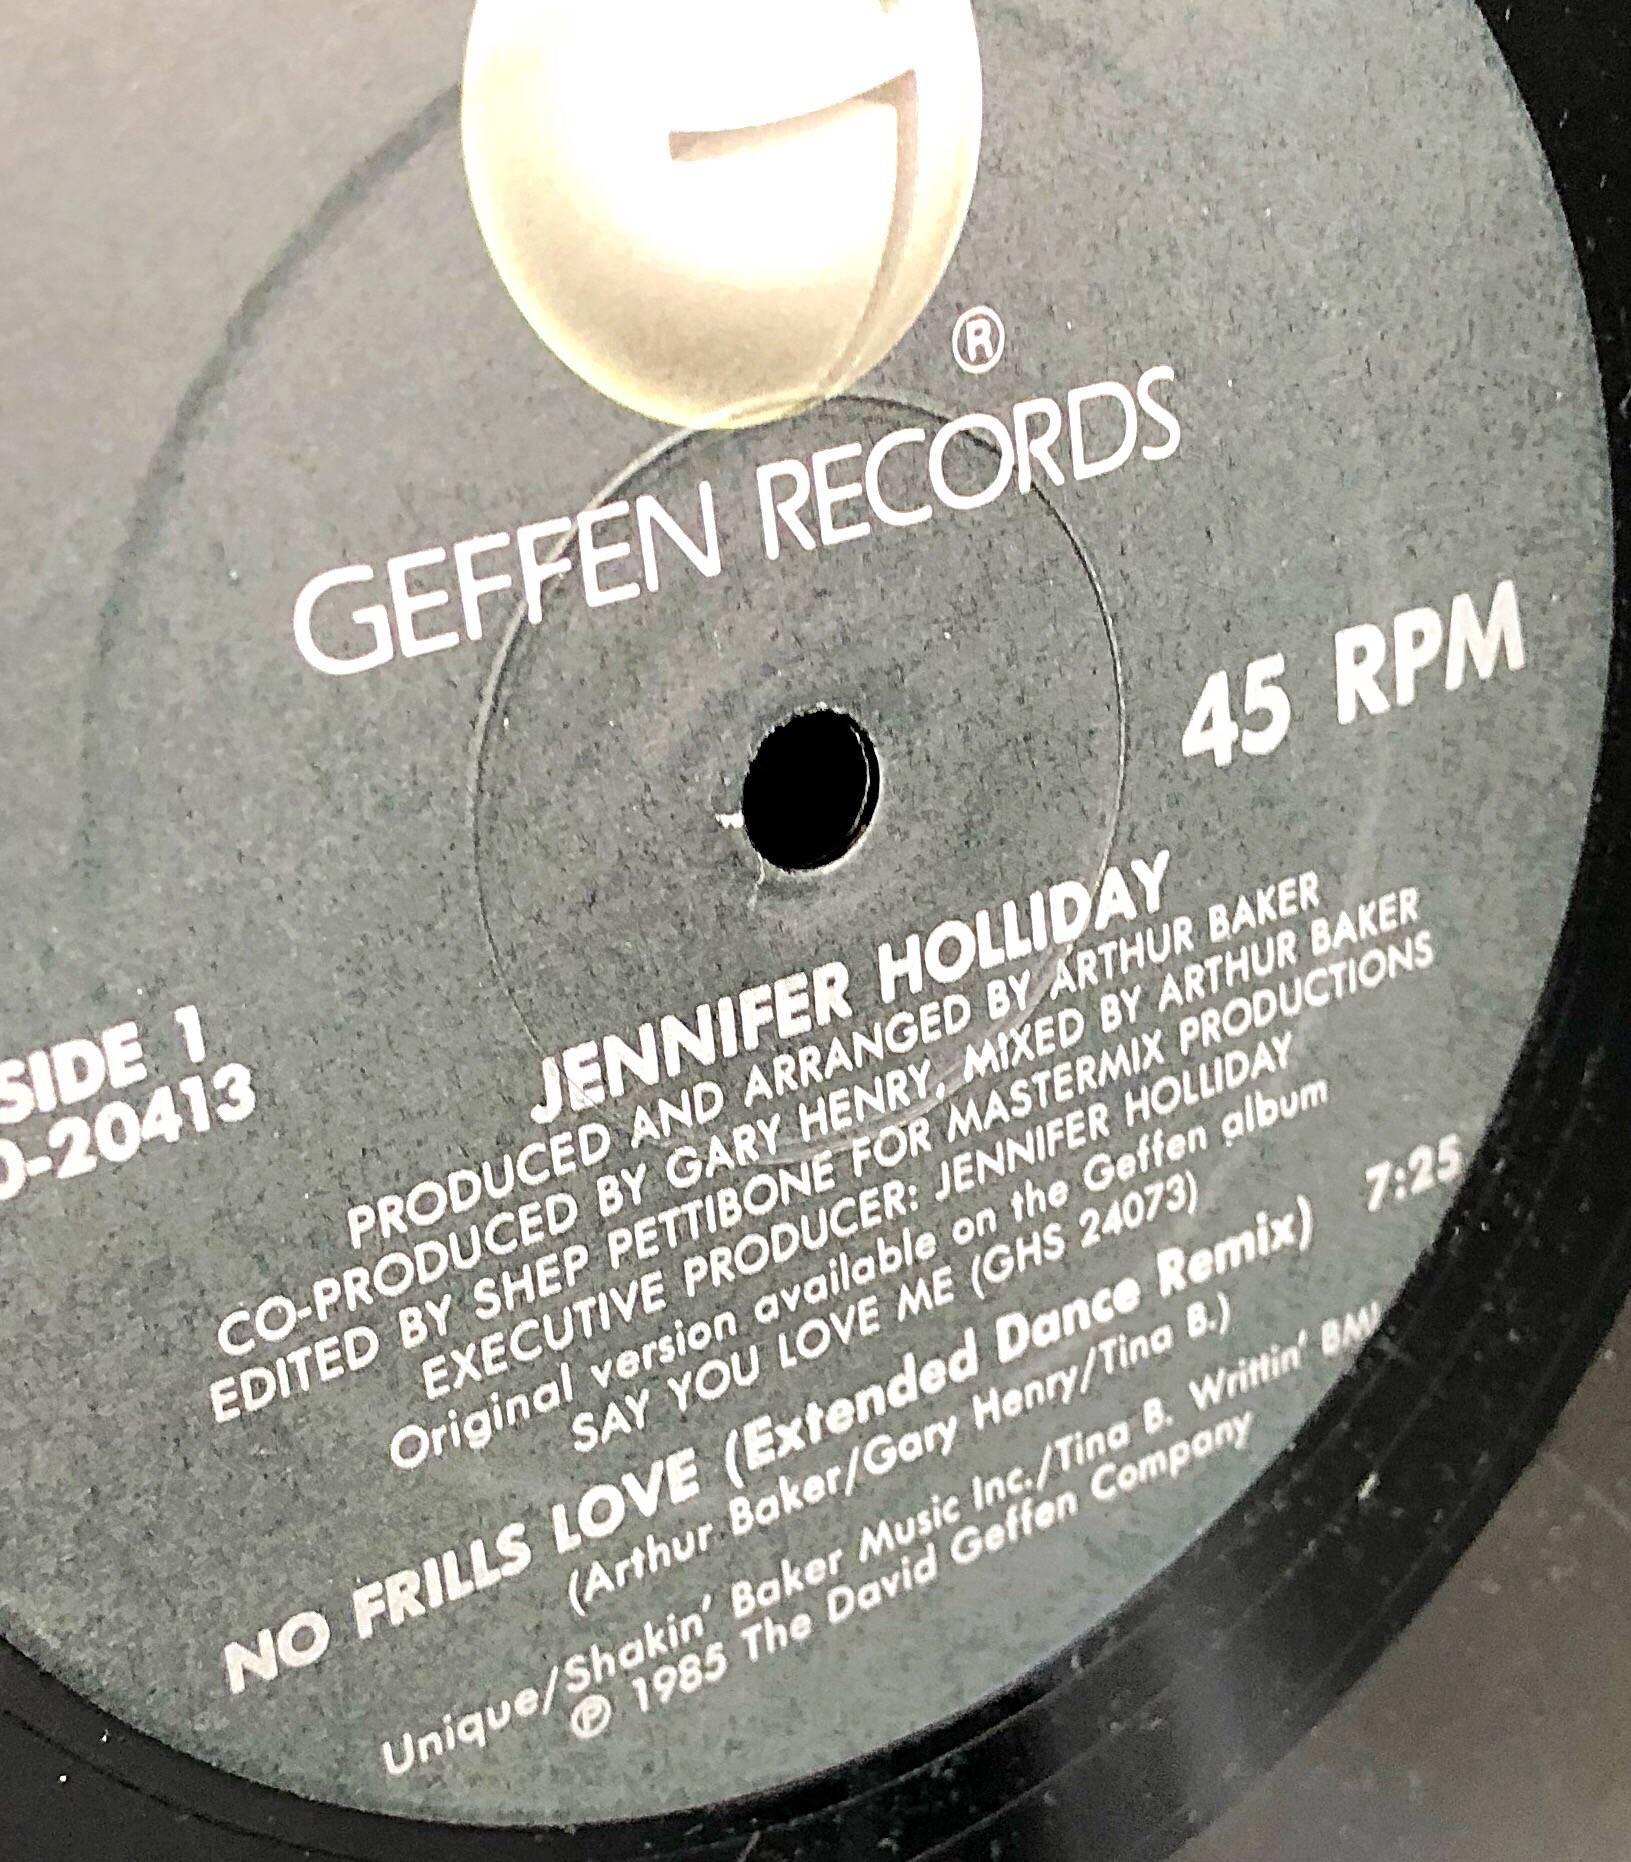 Noir Sac à main des années 1980 - Sac à main unique en son genre - Record Album - Sac à main vintage en crocodile gaufré en vente